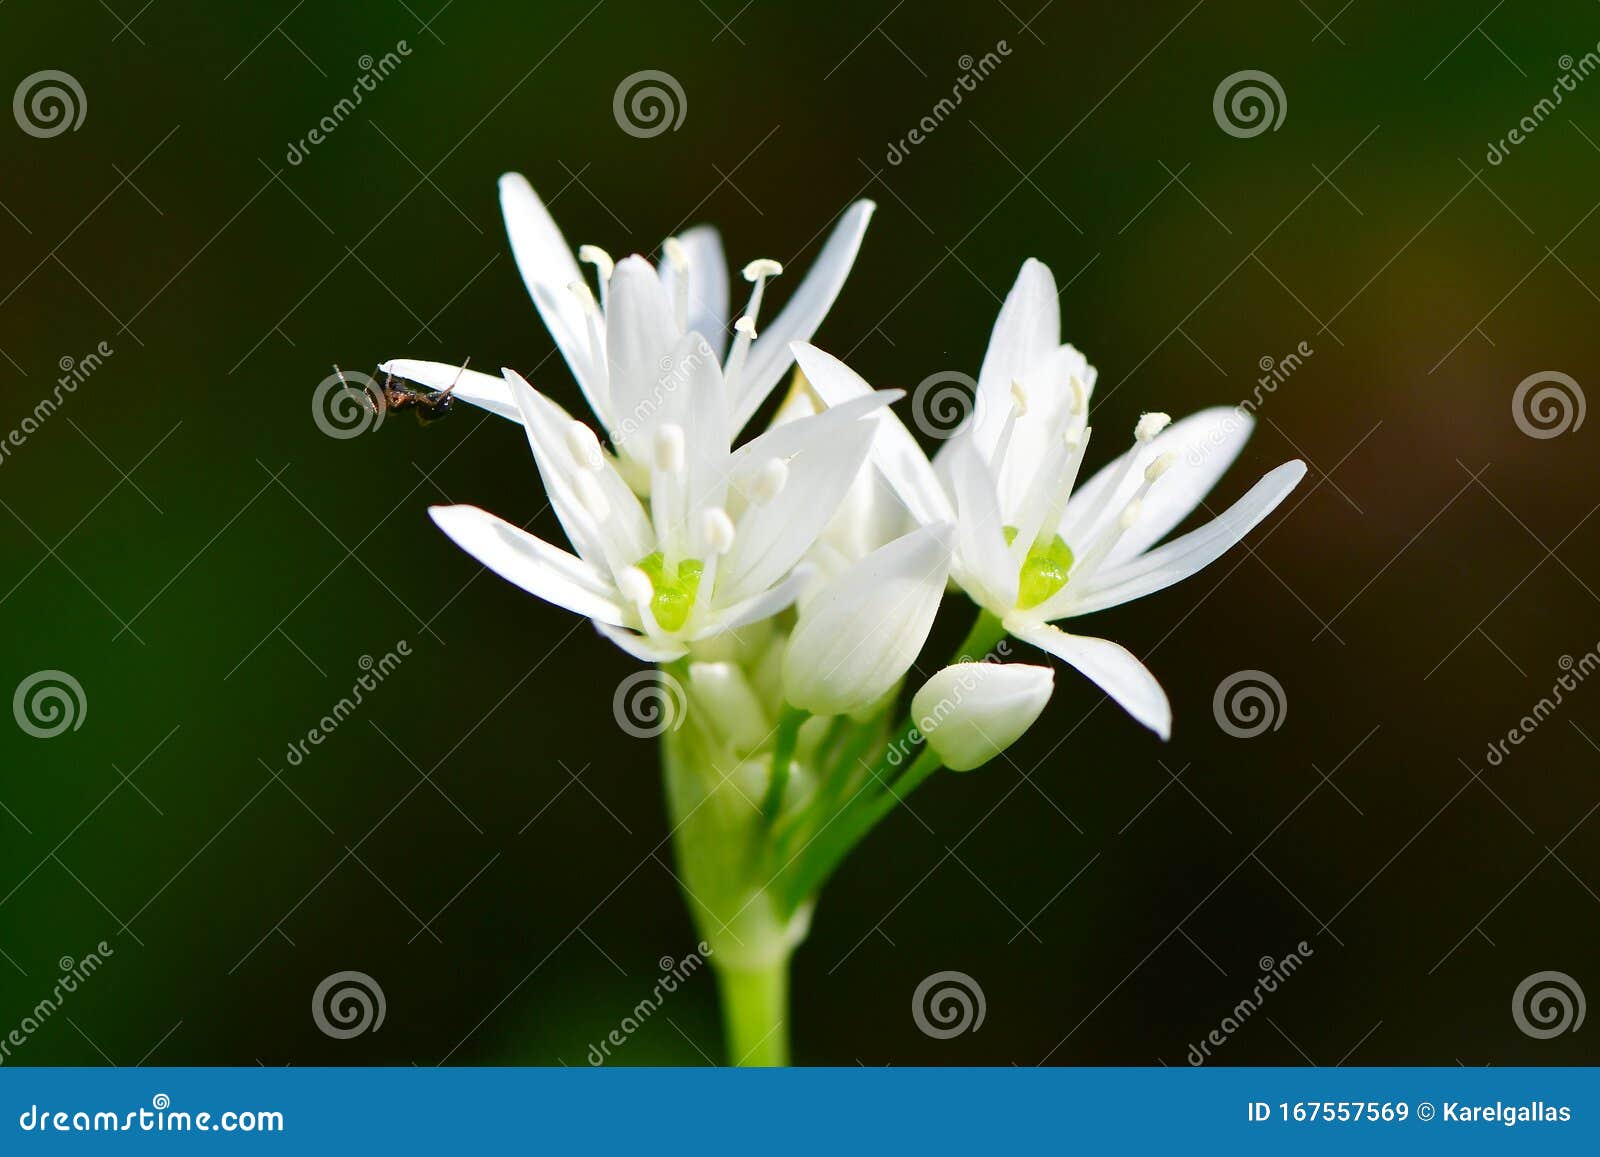 Allium Ursinum or Wild Garlic Stock Image   Image of bloom, green ...